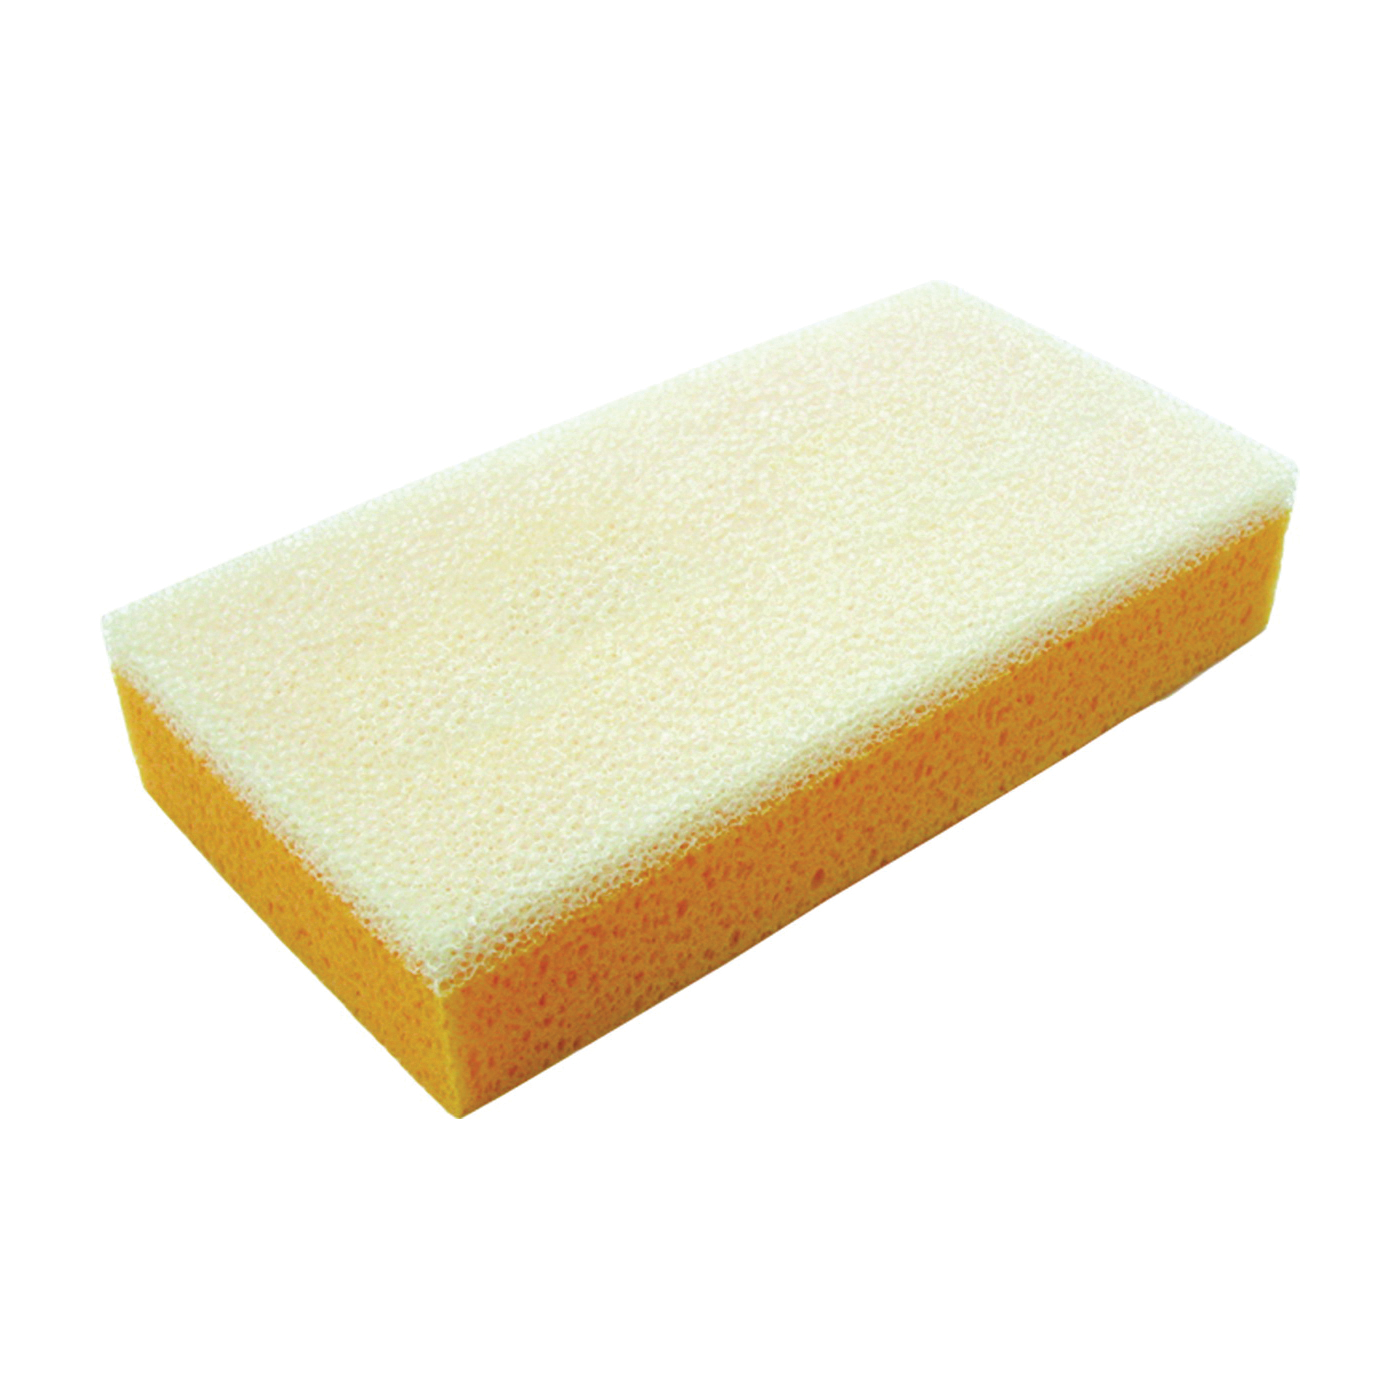 Hyde 45390 Sponge Sanding Drywall